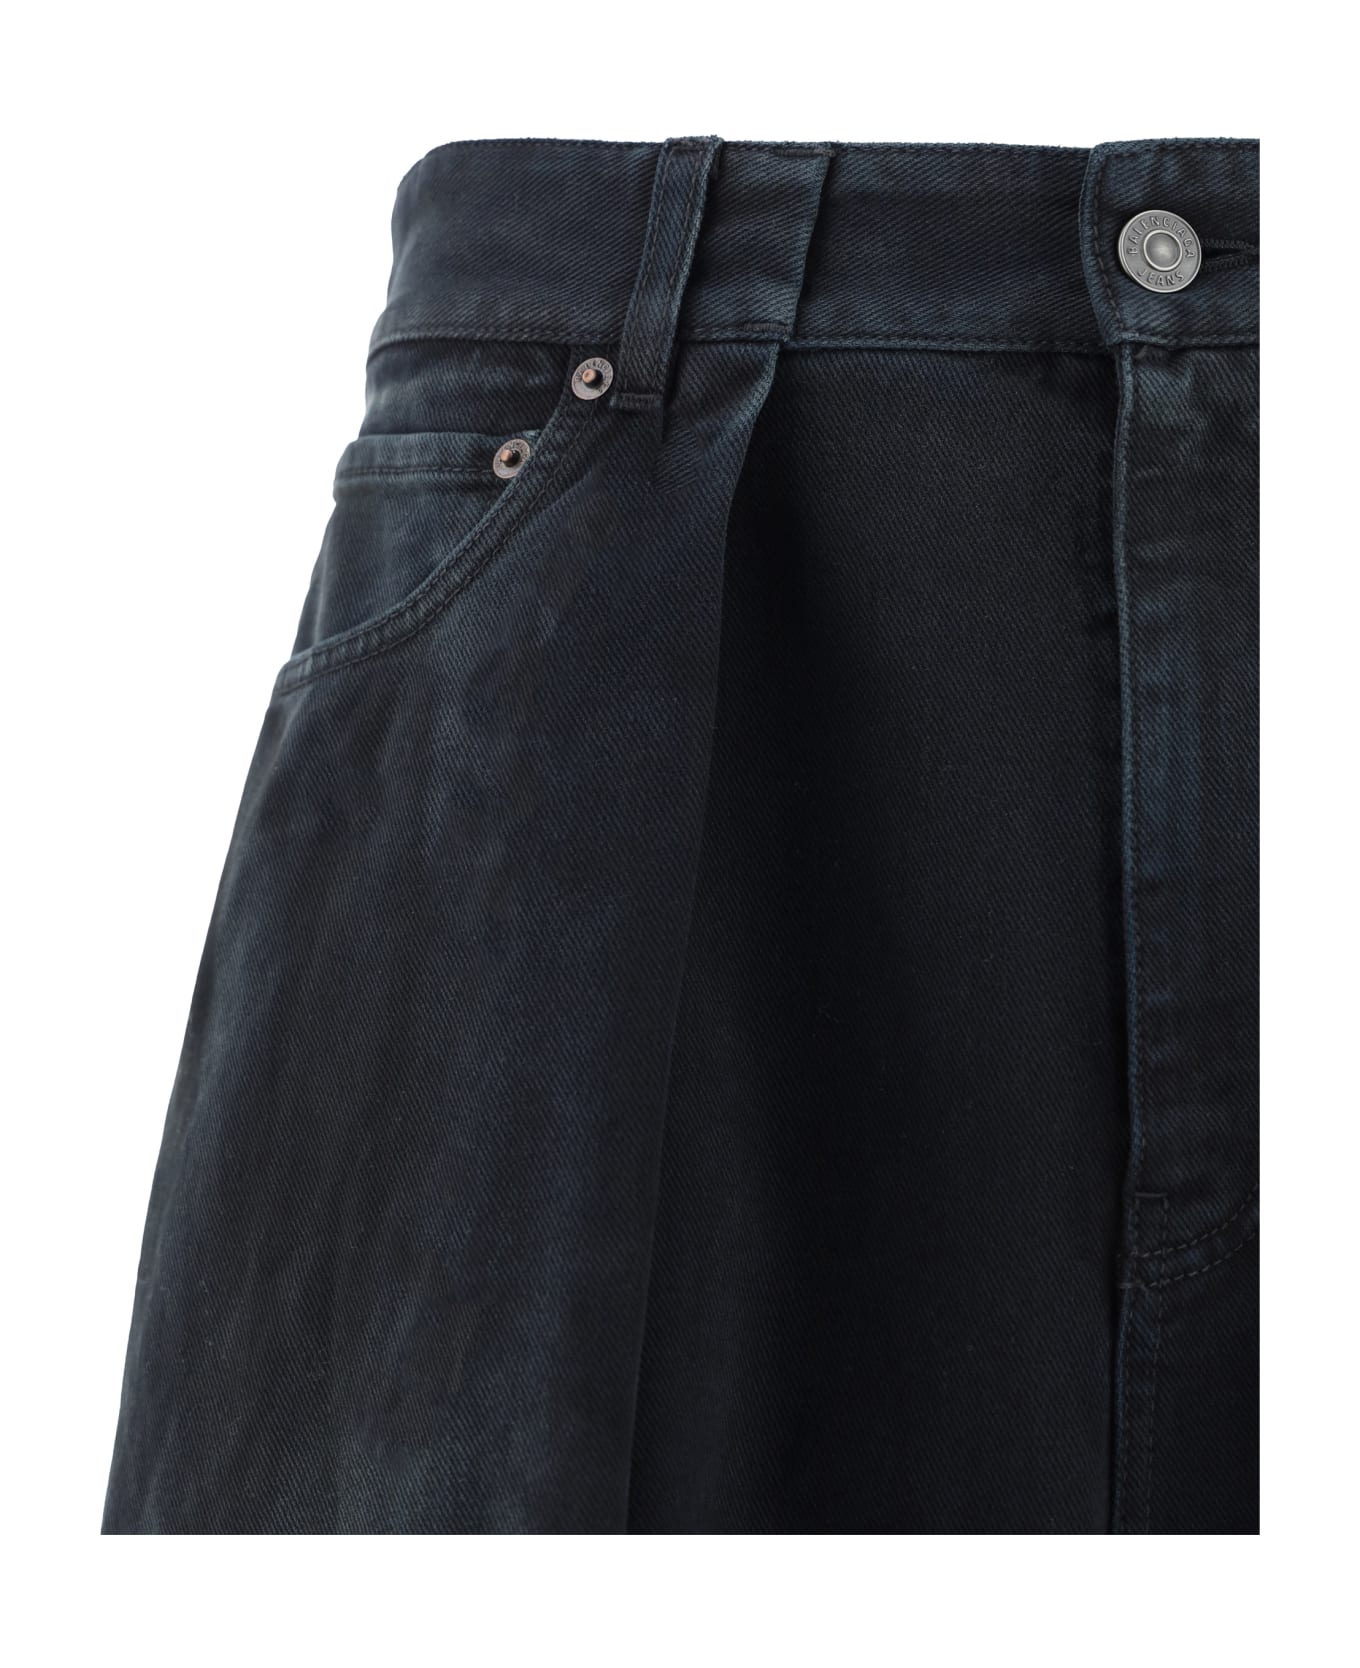 Balenciaga Jeans - Sunbleached Black